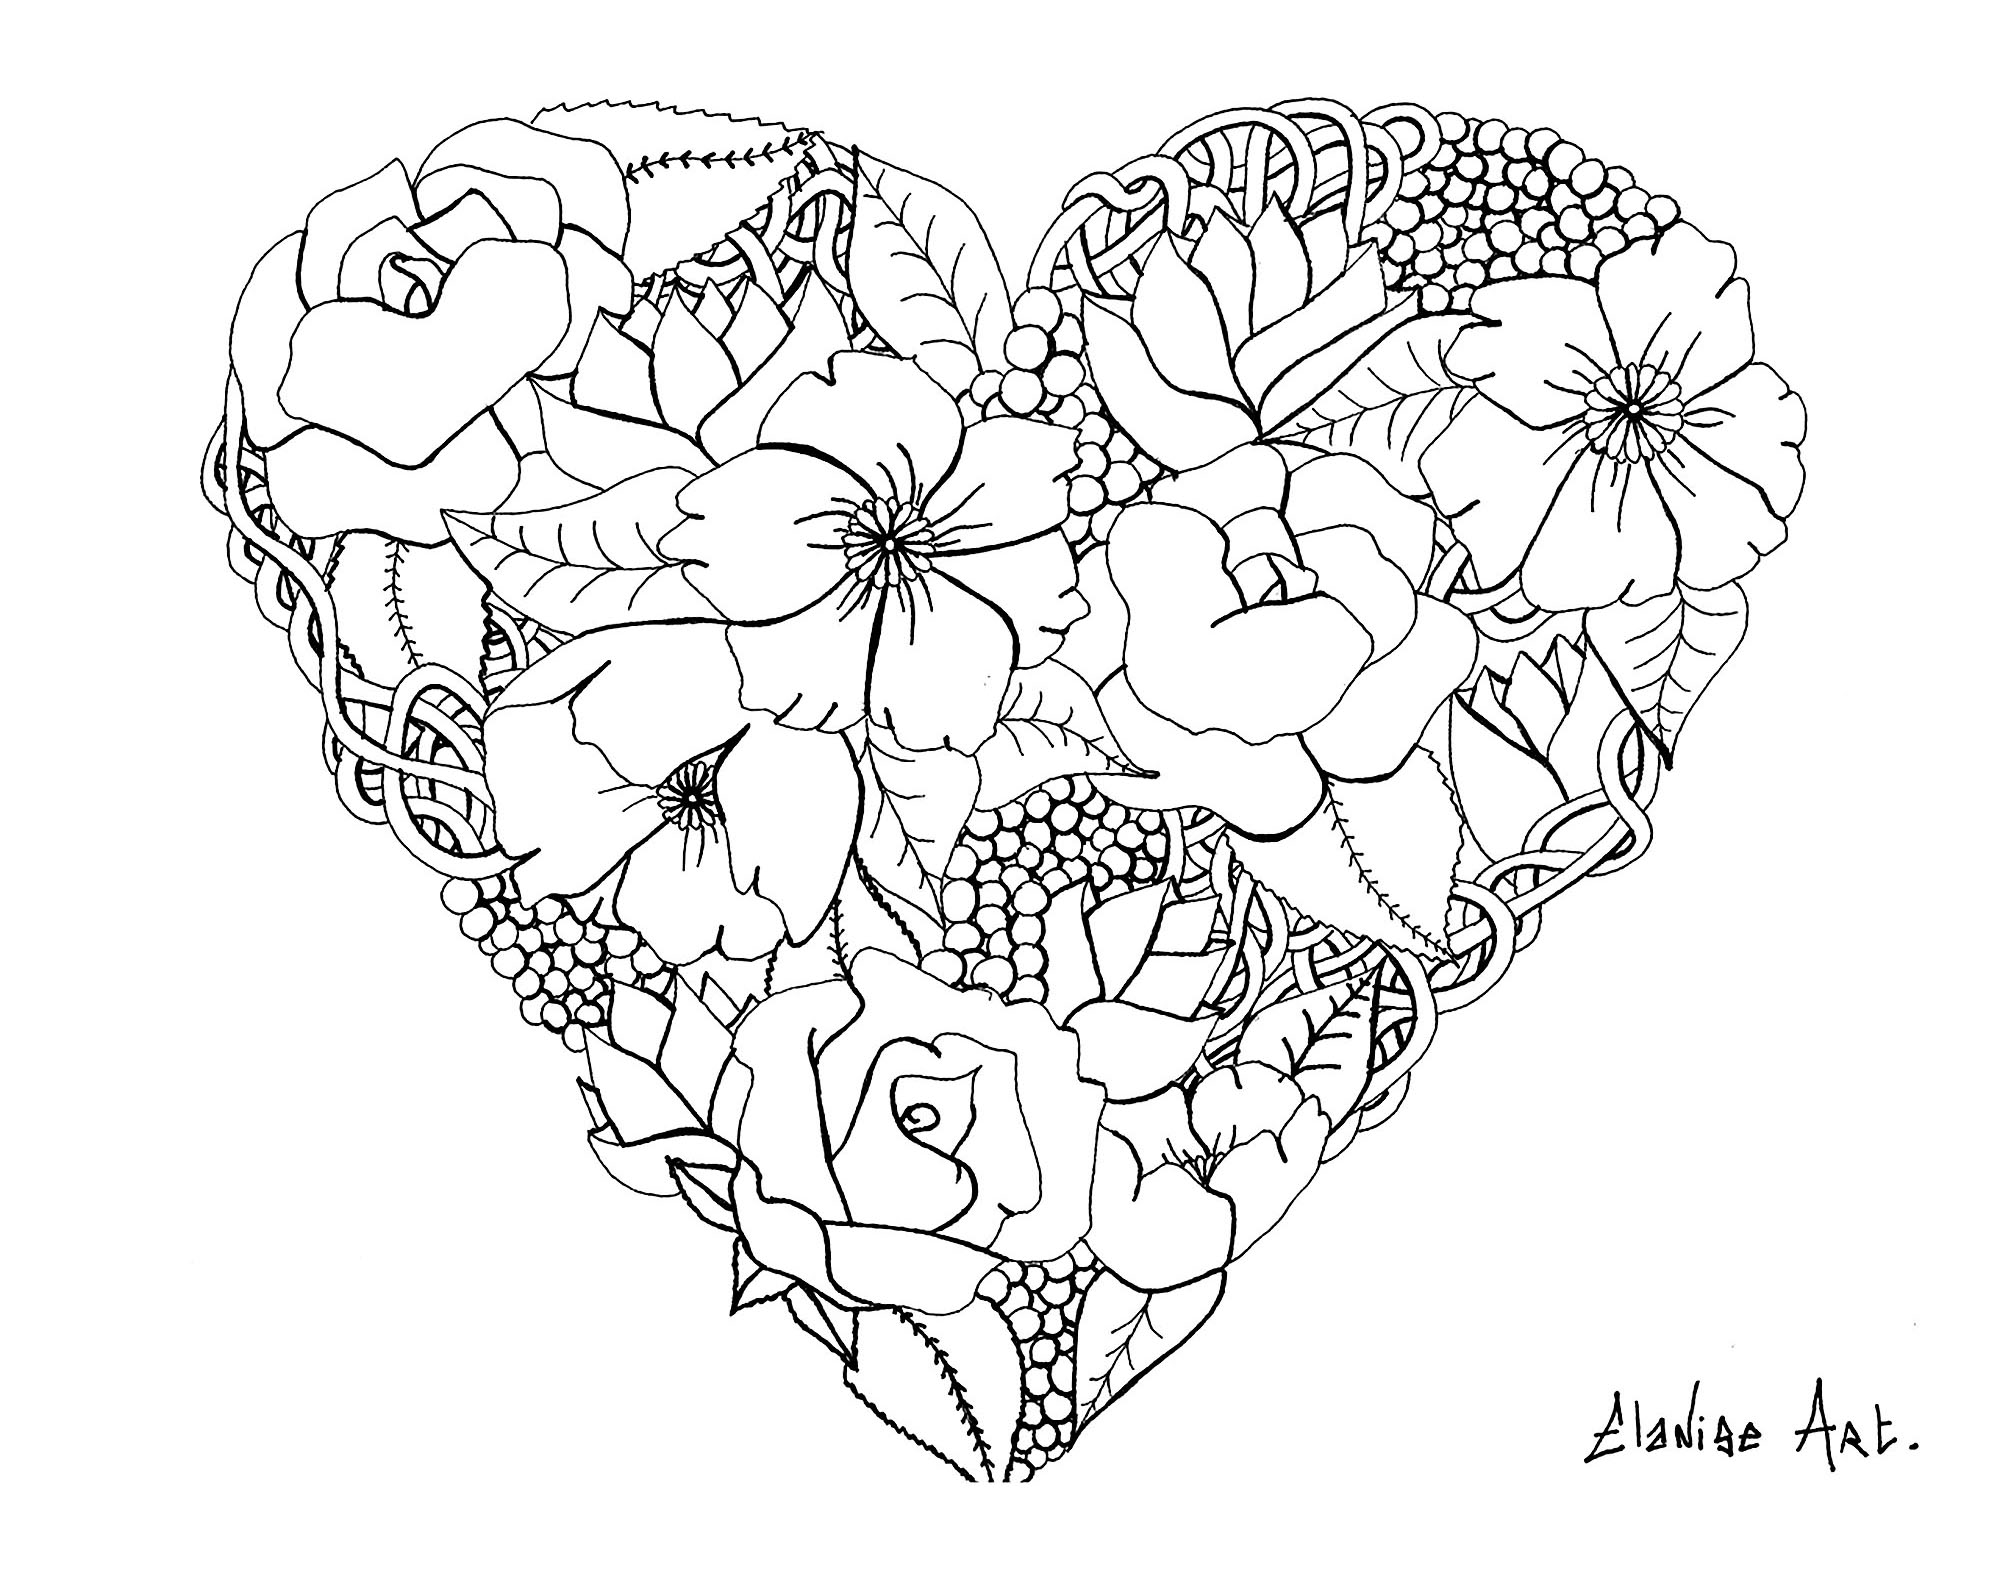 Um bonito coração florido, de Elanise. Não é bem uma Mandala, mas uma página para colorir com um coração com flores realistas.